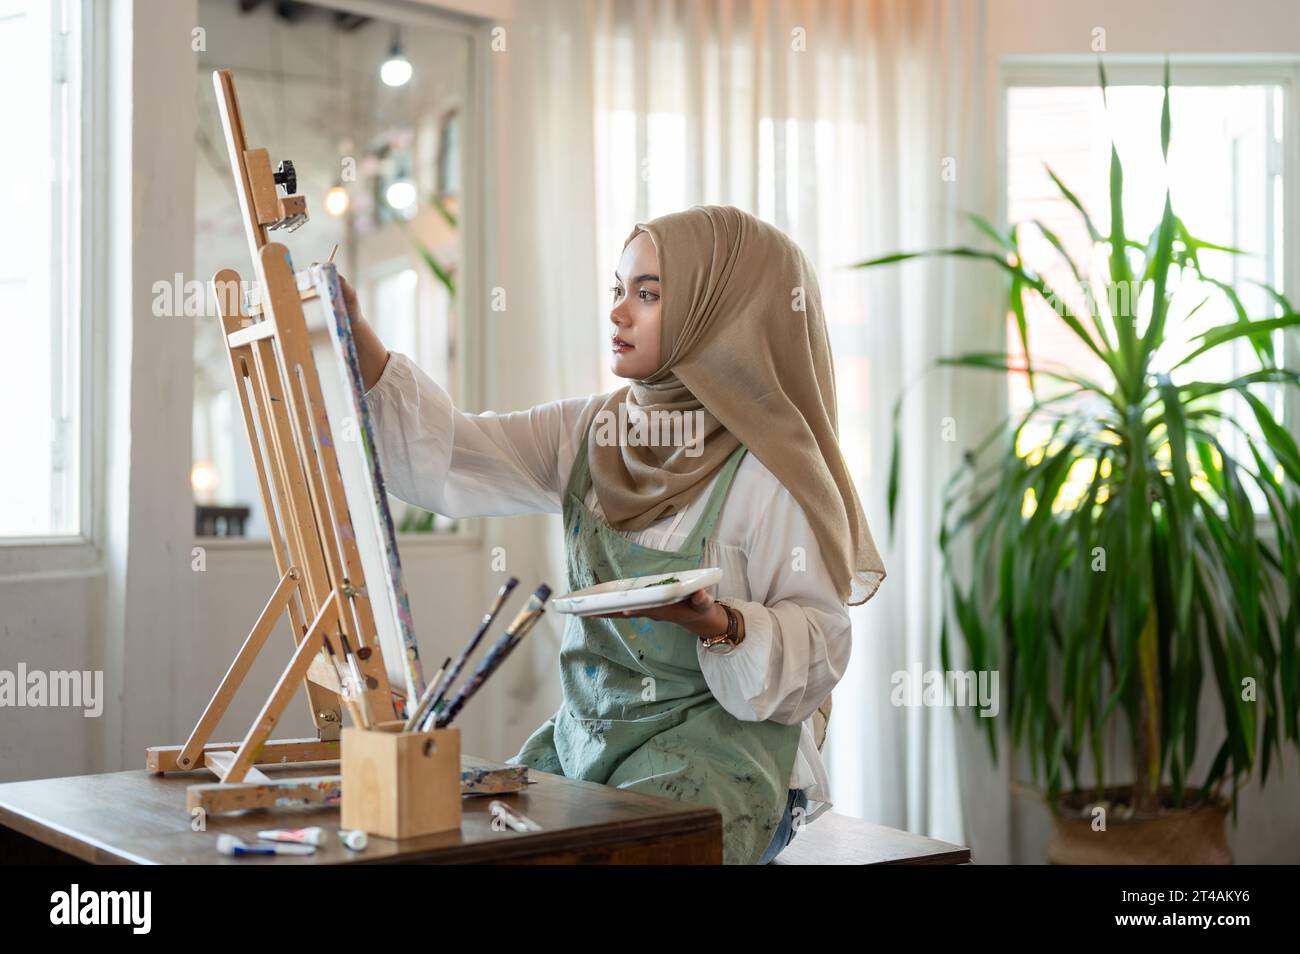 Eine konzentrierte und kreative asiatisch-muslimische Künstlerin, die ihre Kunstwerke, Zeichnungen oder Gemälde auf Leinwand in ihrem Atelier-Atelier kreiert. Stockfoto